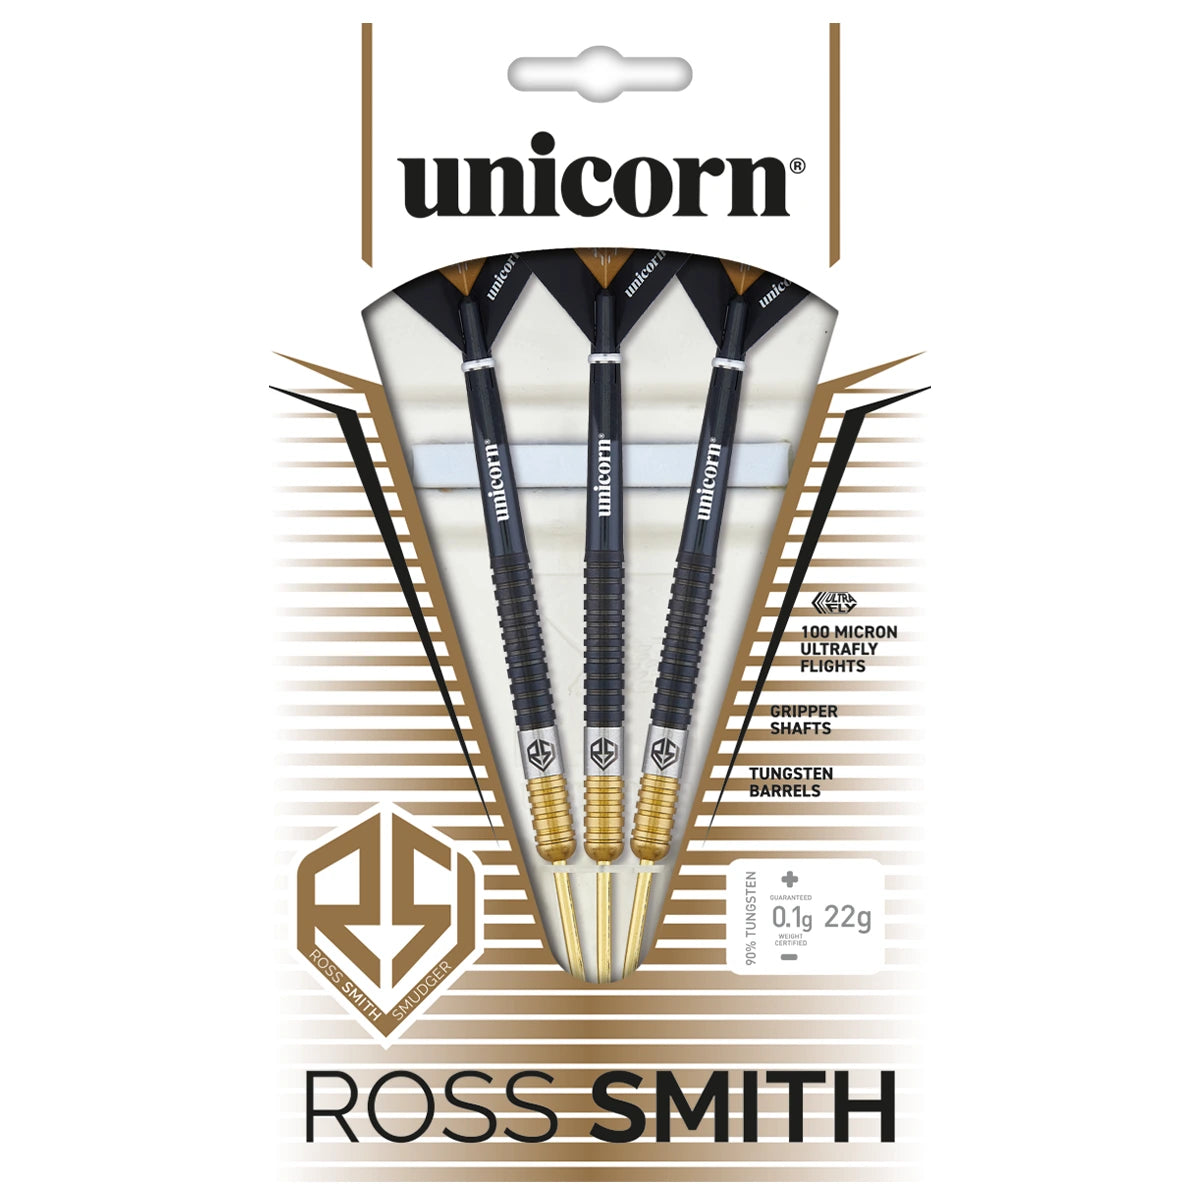 Unicorn Ross Smith TwoTone 90% Tungsten 20g Darts